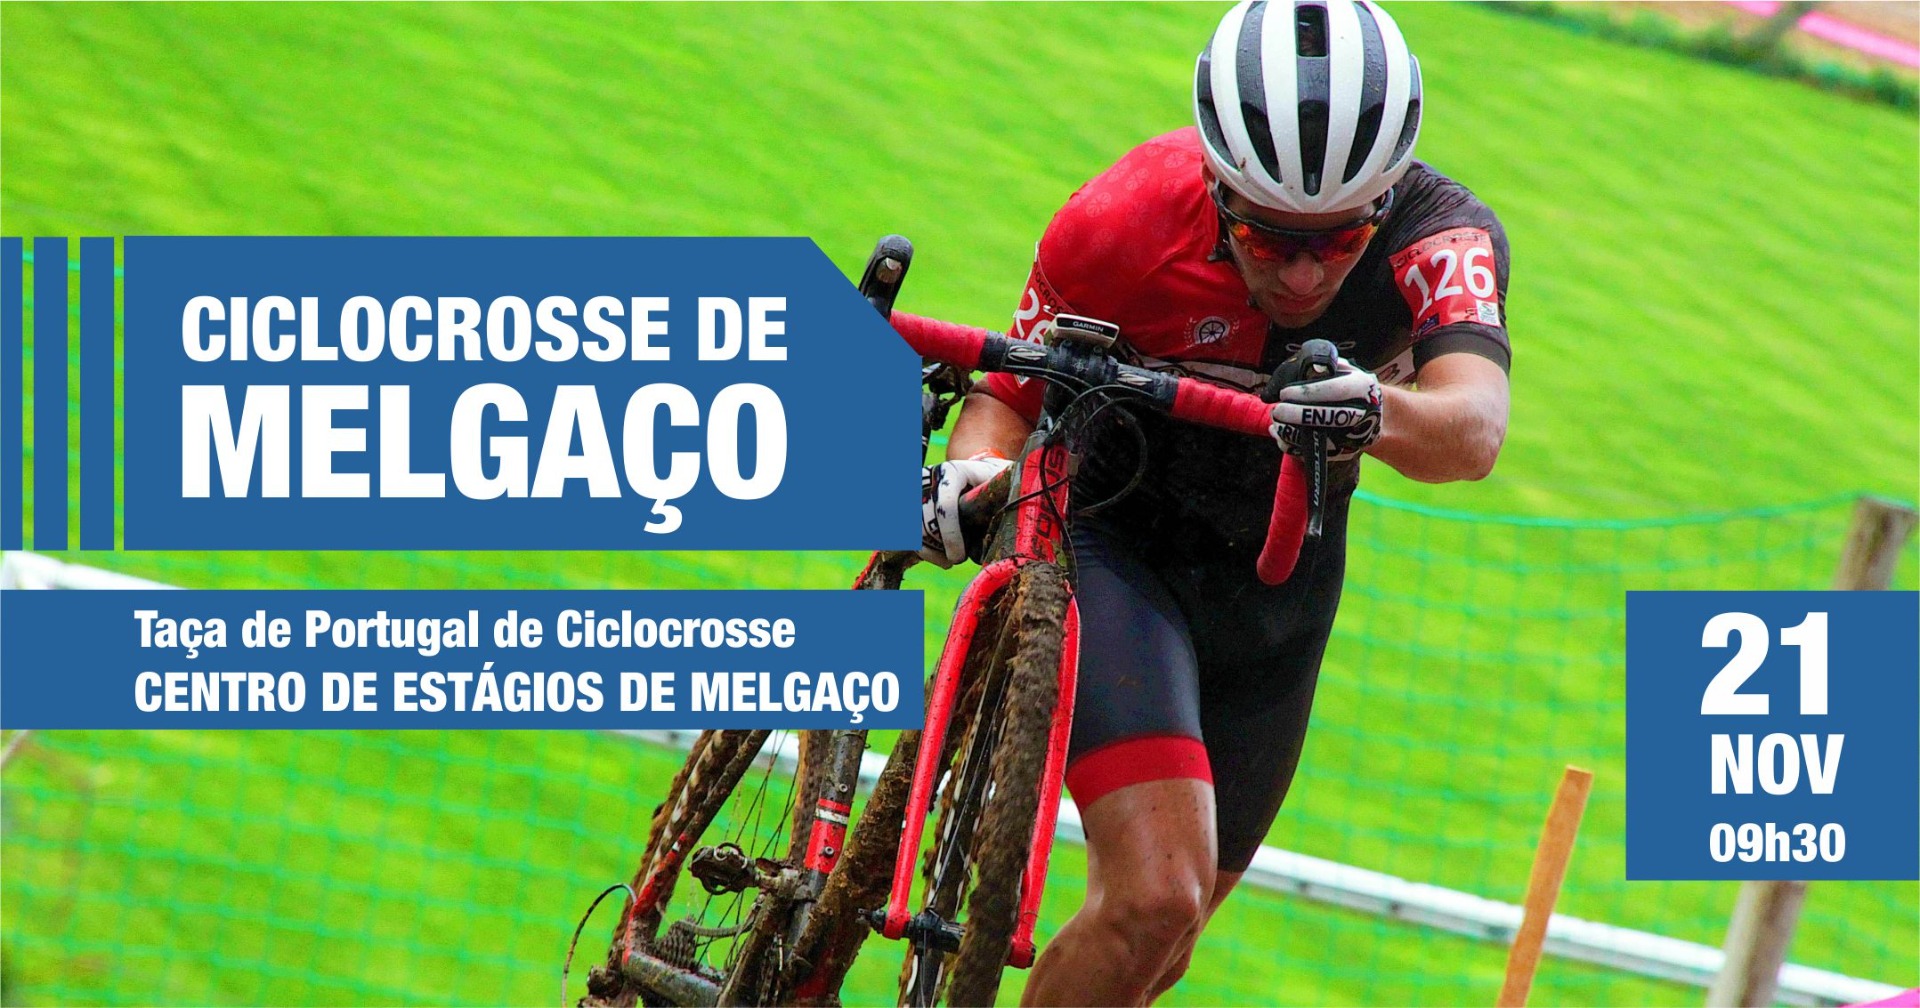 CICLOCROSSE DE MELGAÇO - 2ª prova Taça de Portugal de Ciclocrosse